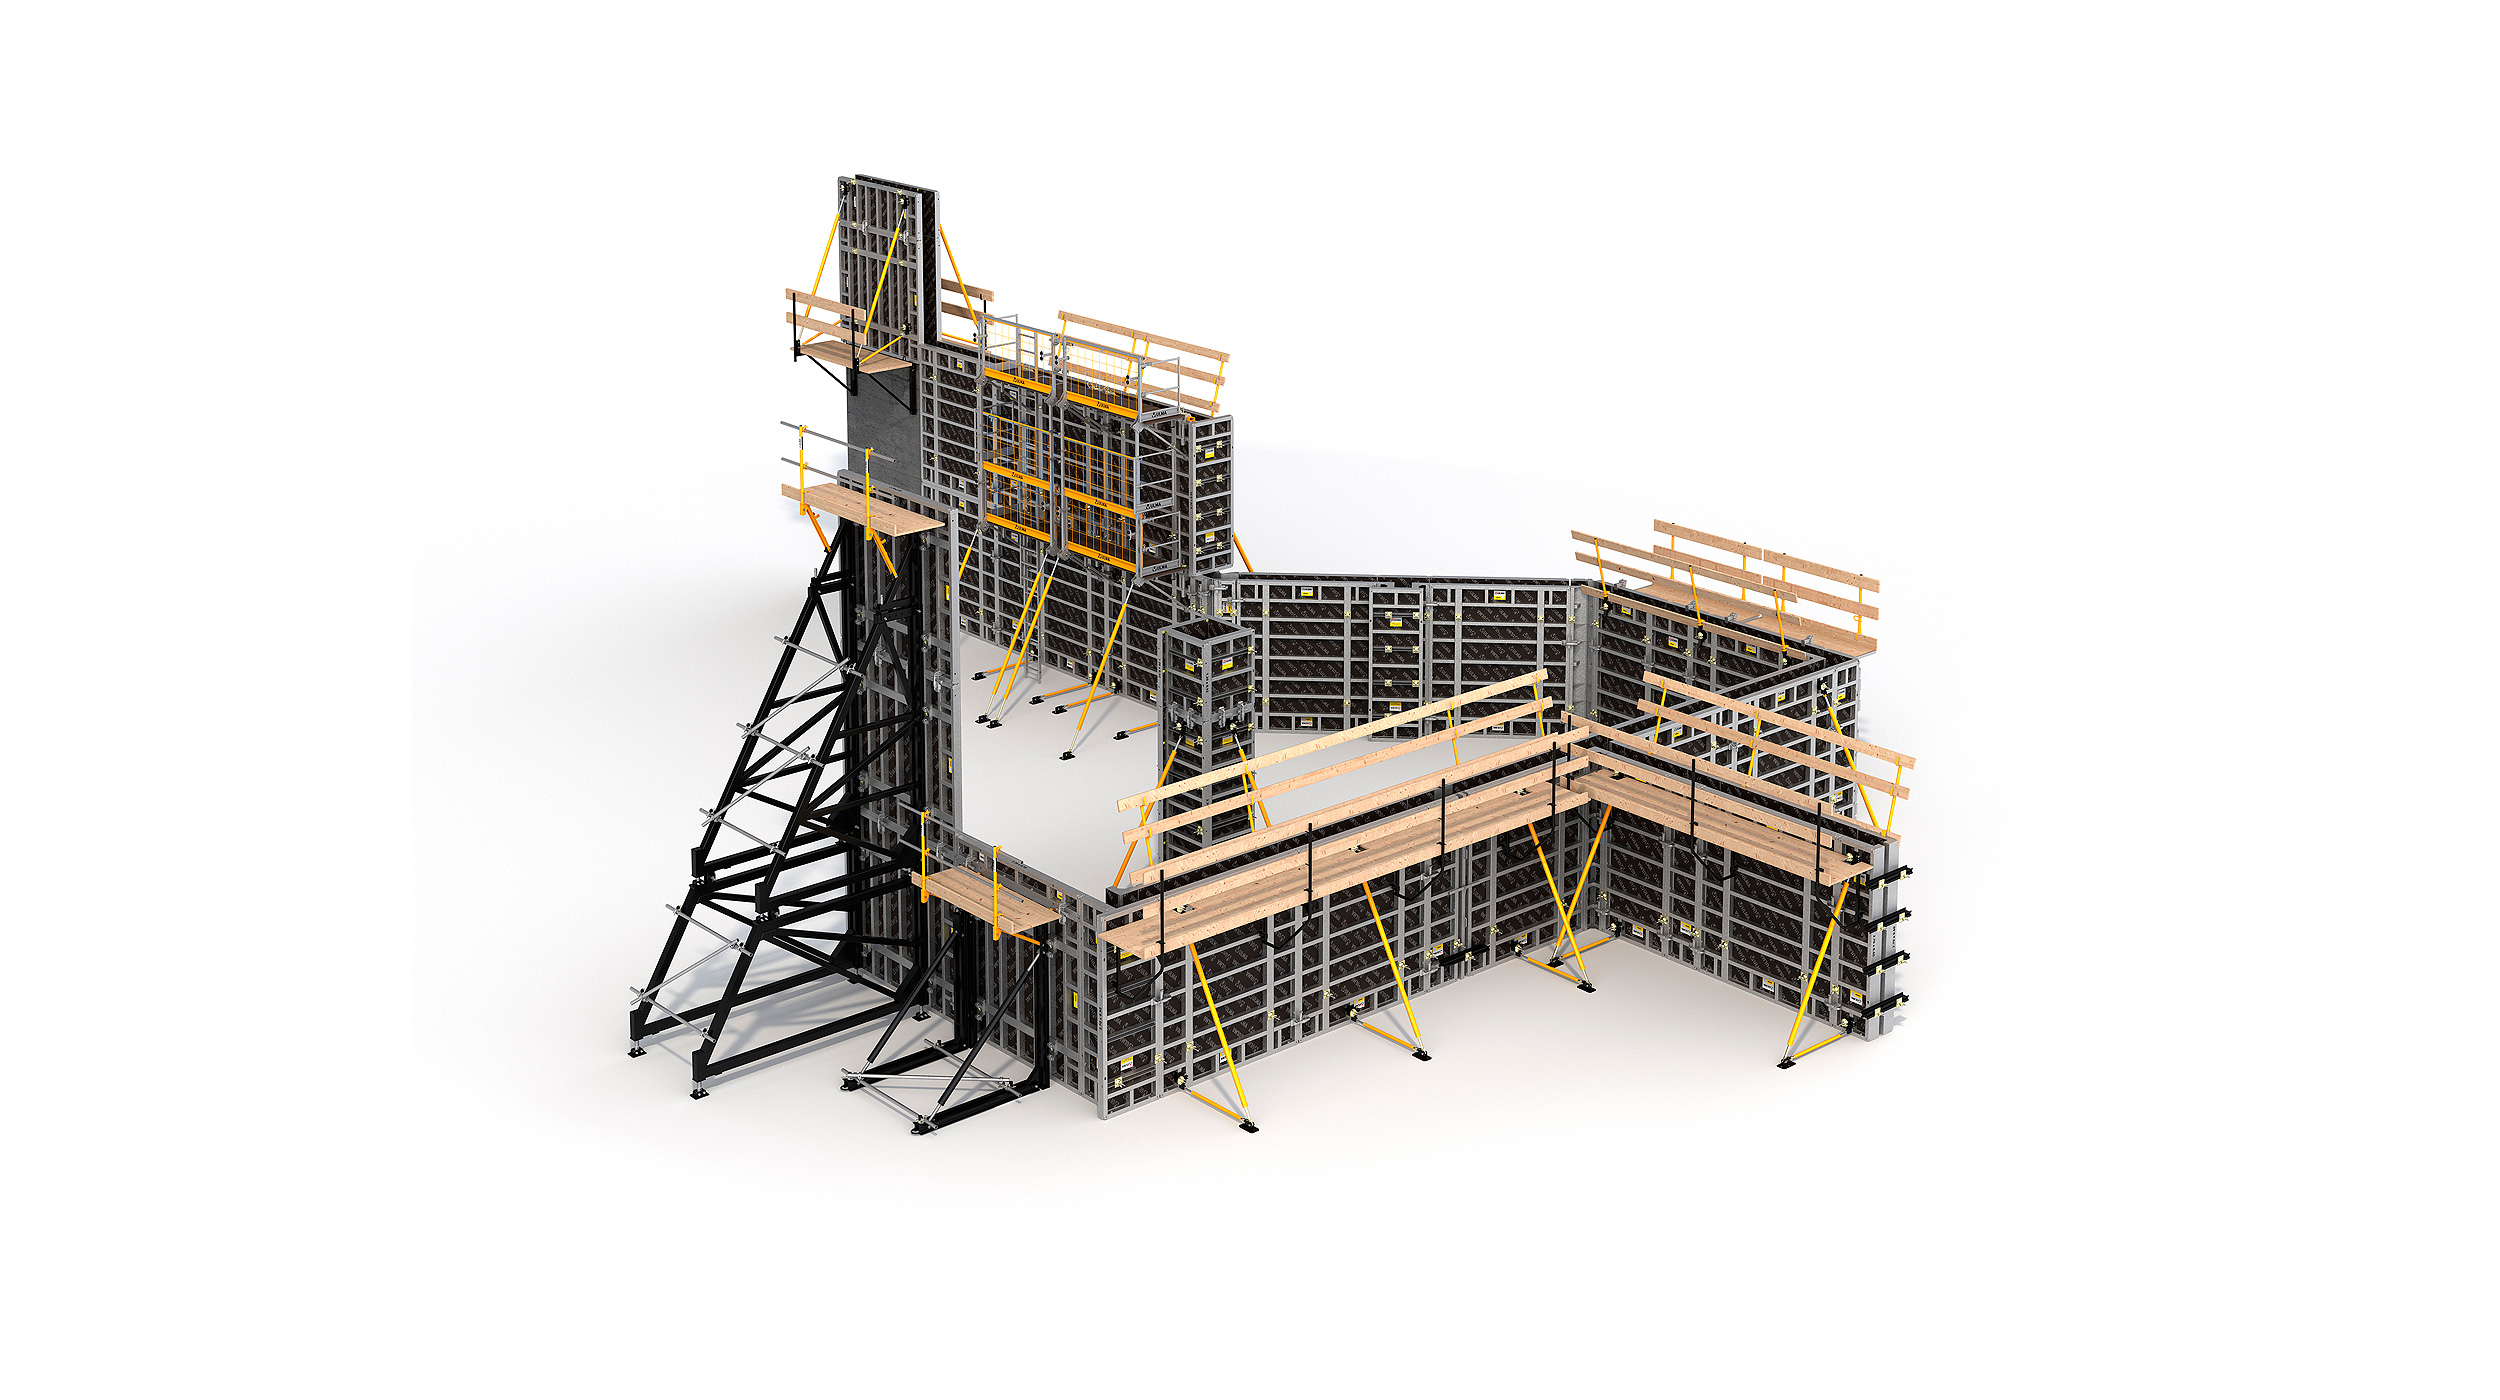 Systémové bednění pro veškeré vertikální konstrukce betonových staveb, které umožňuje vysokovou efektivitu práce při zachování nízkých nákladů.